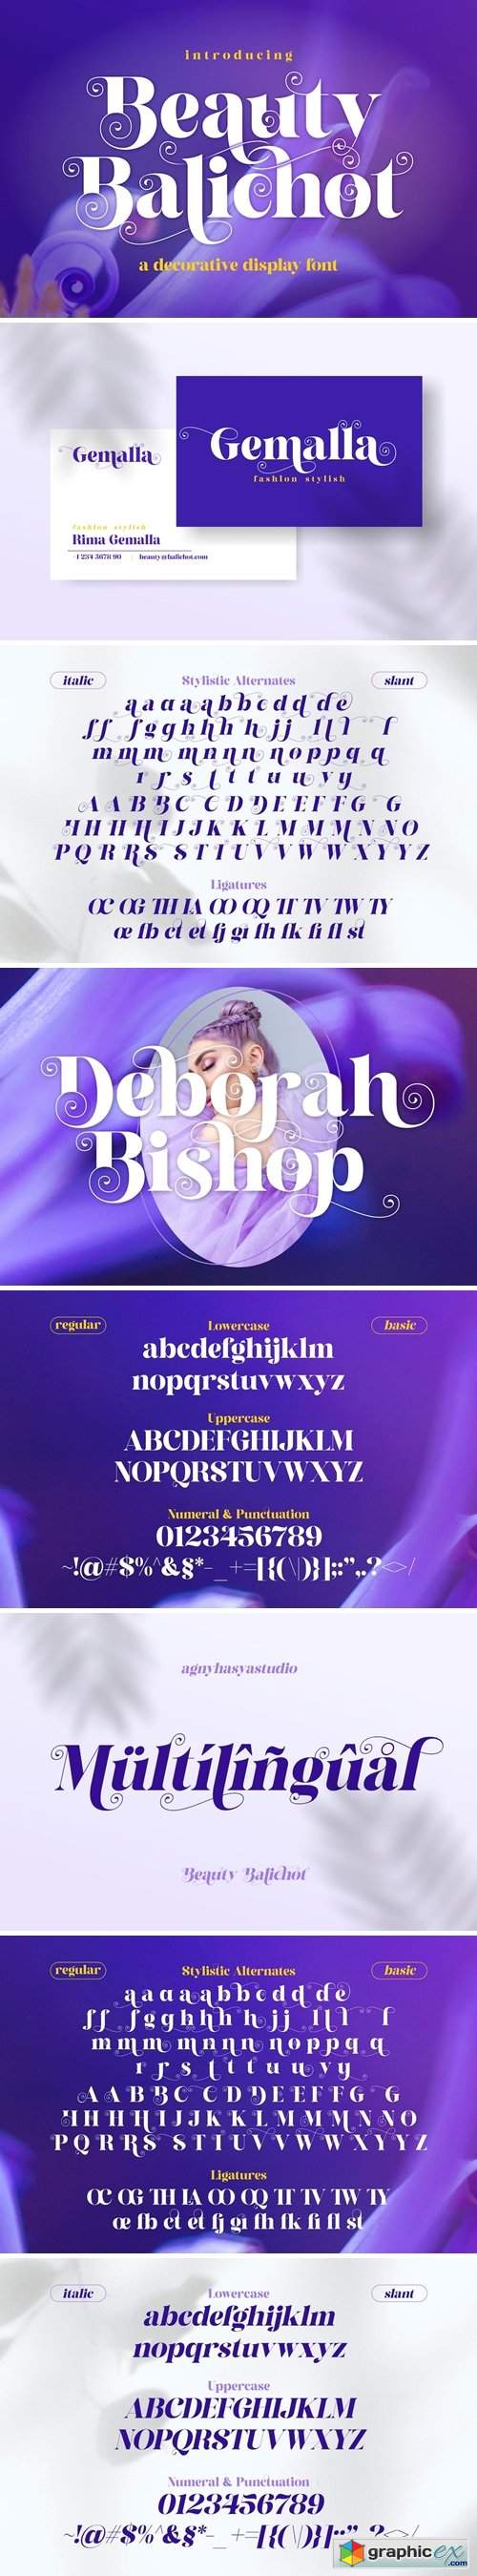 Beauty Balichot - A Decorative Serif Font